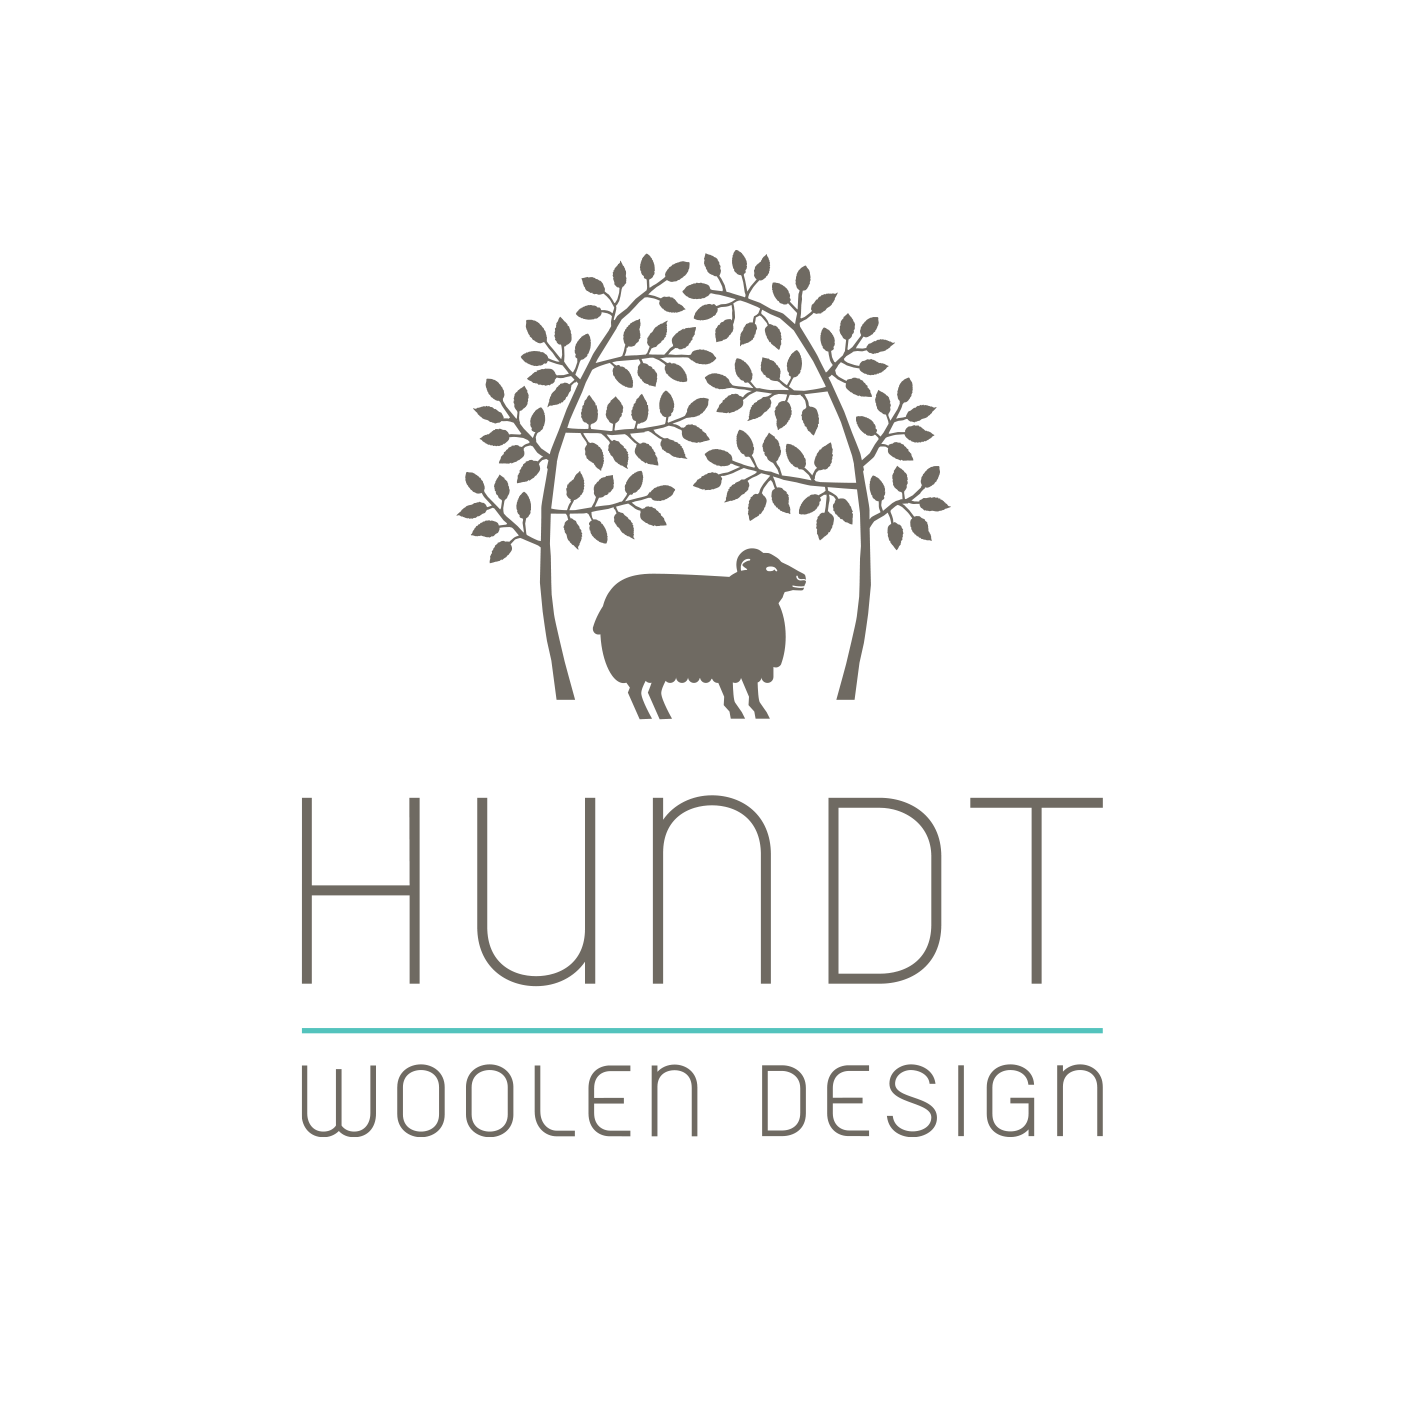 hundt woolen design logo